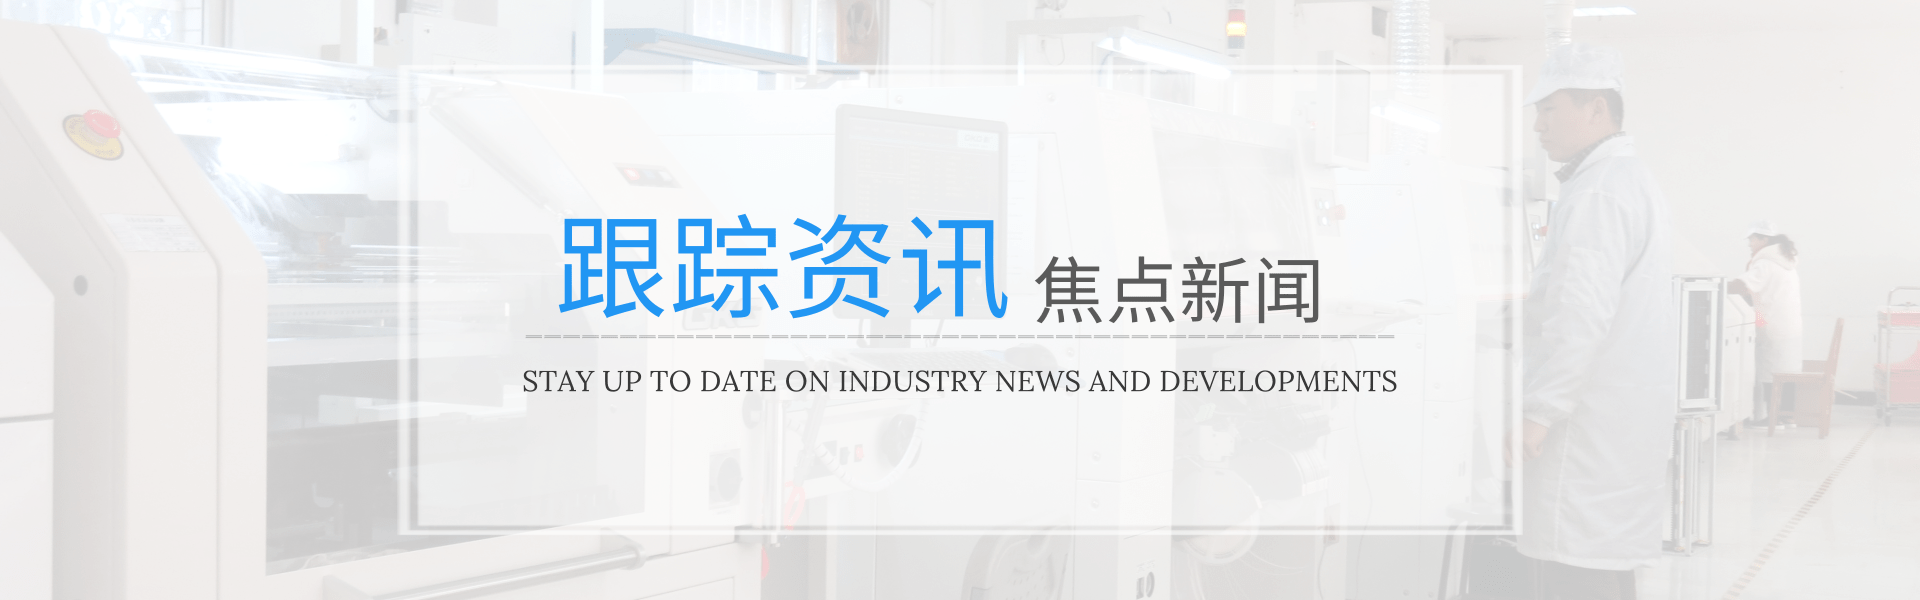 未来三年将是国内企业布局精密点胶机的黄金时间-深圳市润之鑫科技有限公司